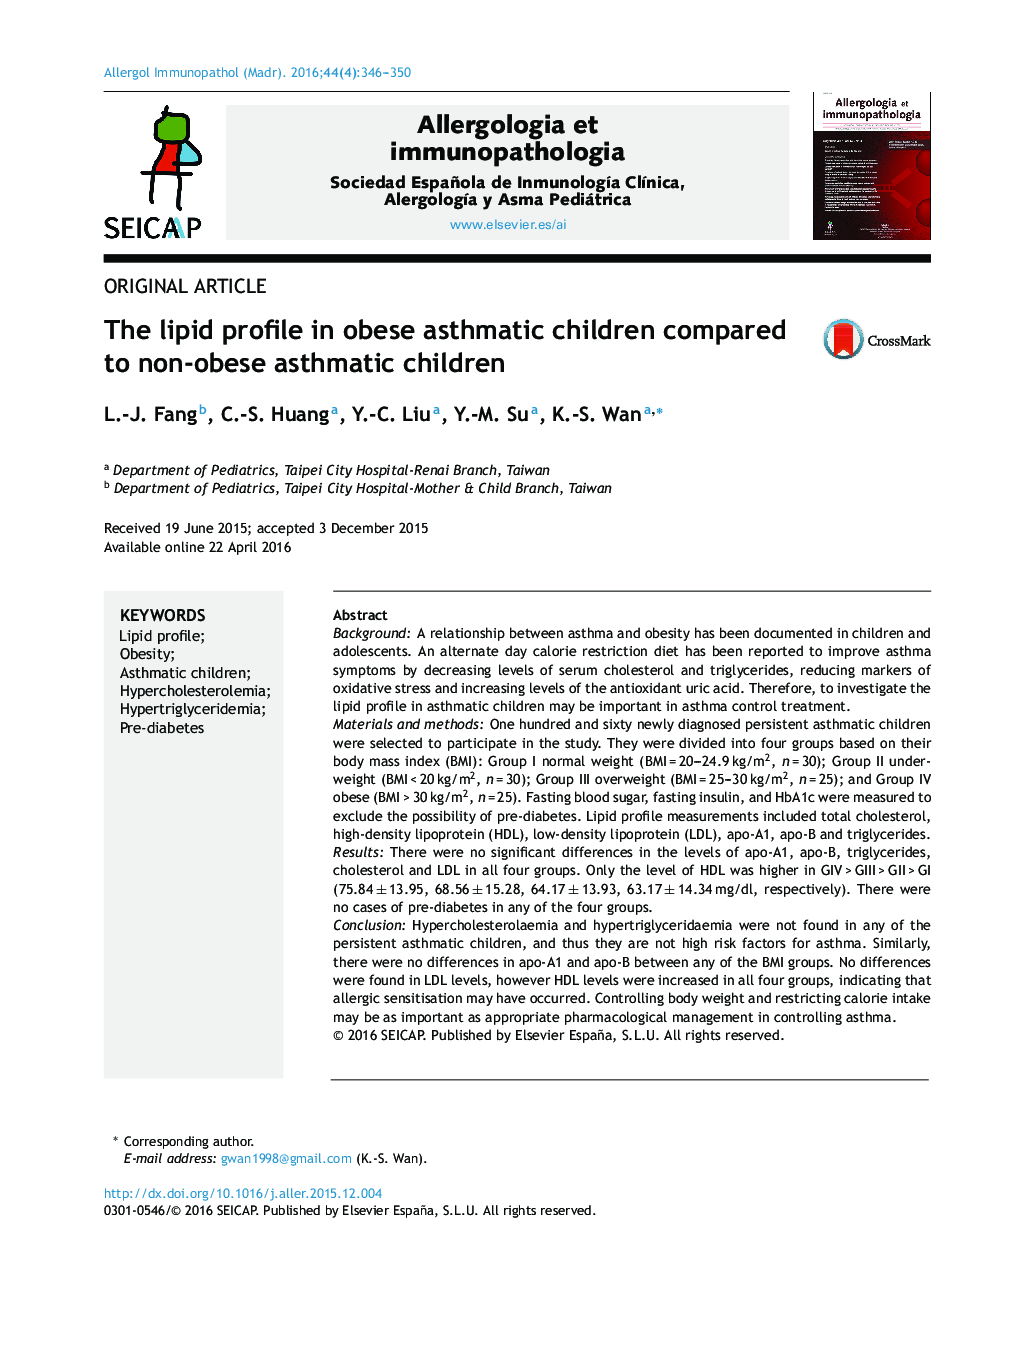 پروفایل چربی در کودکان مبتلا به آسم چاق در مقایسه با کودکان مبتلا به آسم غیر چاق 